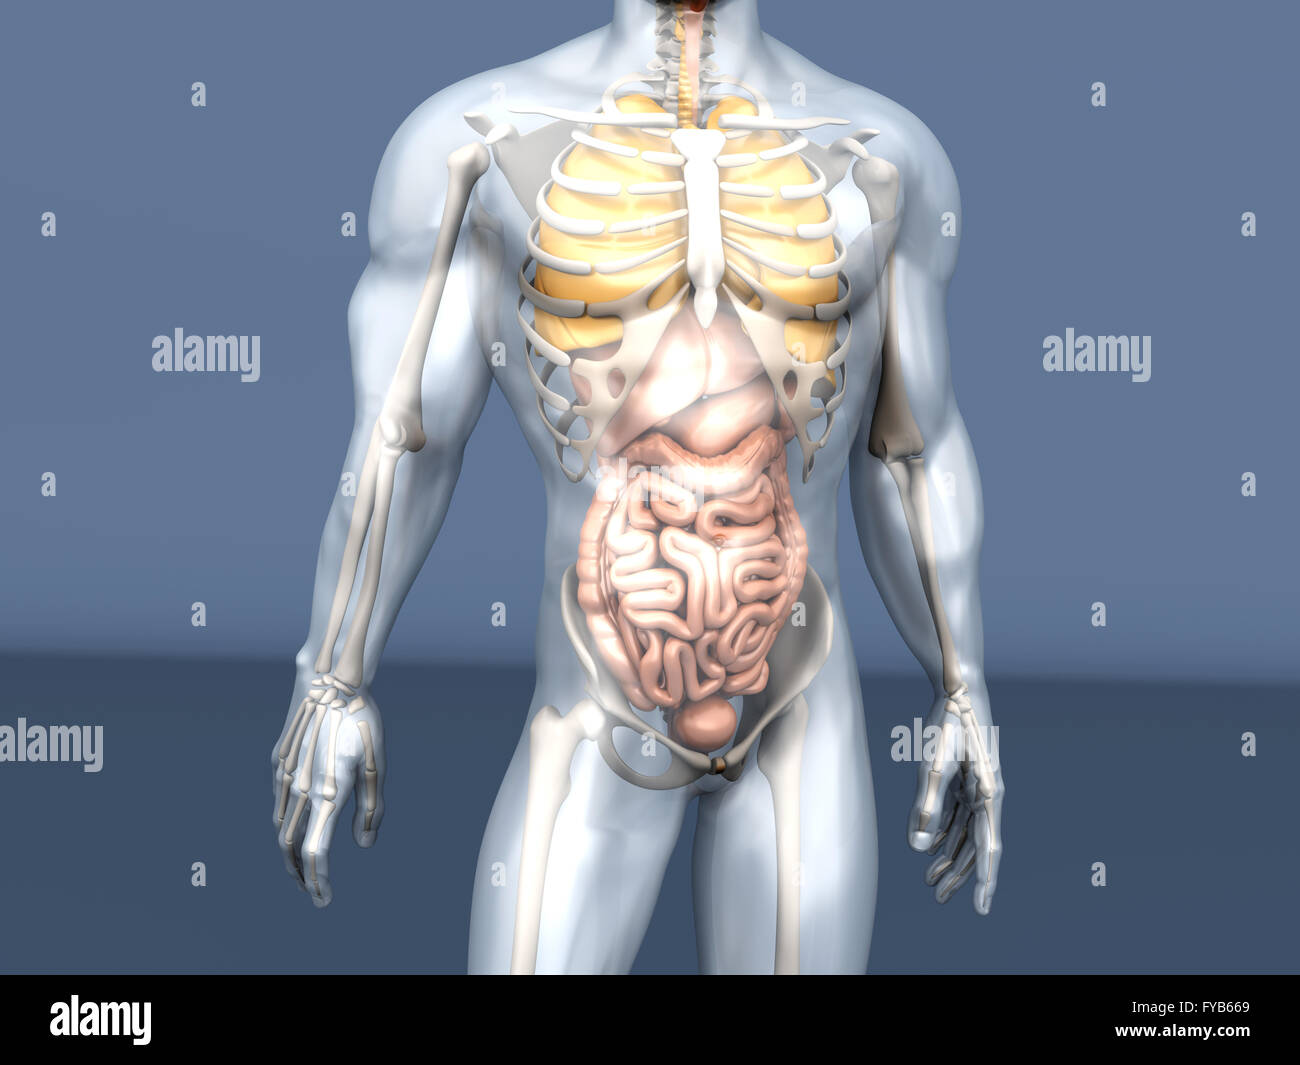 Человек с внутренним локусом контроля. Анатомия человека. Скелет с внутренними органами. Организм человека. Анатомия органов у мужчины с скелетом.